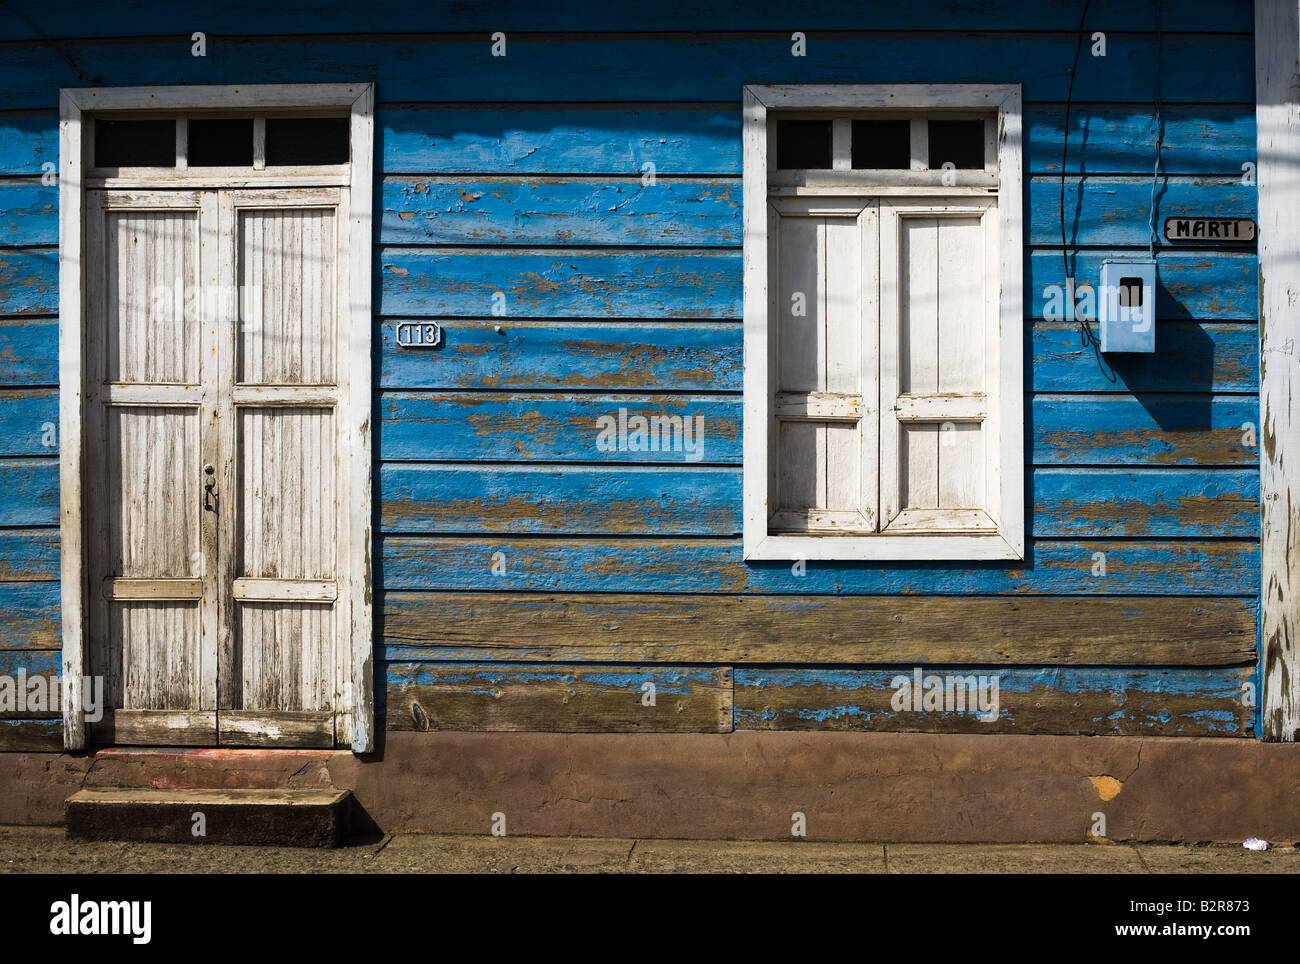 House facade on Marti street Baracoa, Cuba Stock Photo